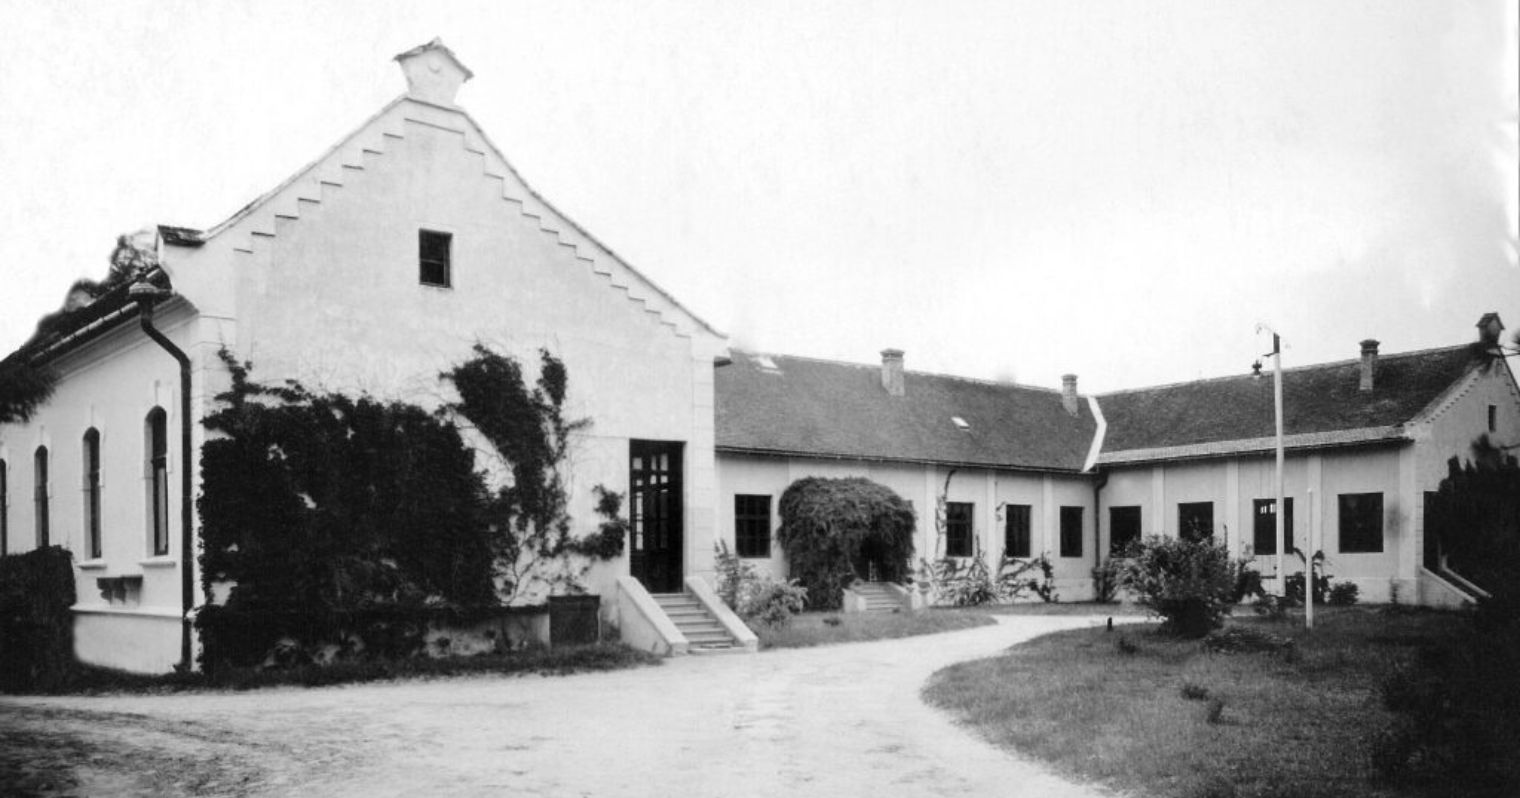 Alföldi ASzC Bedő Albert Erdészeti Technikum, Szakképző Iskola és Kollégium egyik épületének régi, még fekete-fehér képe.